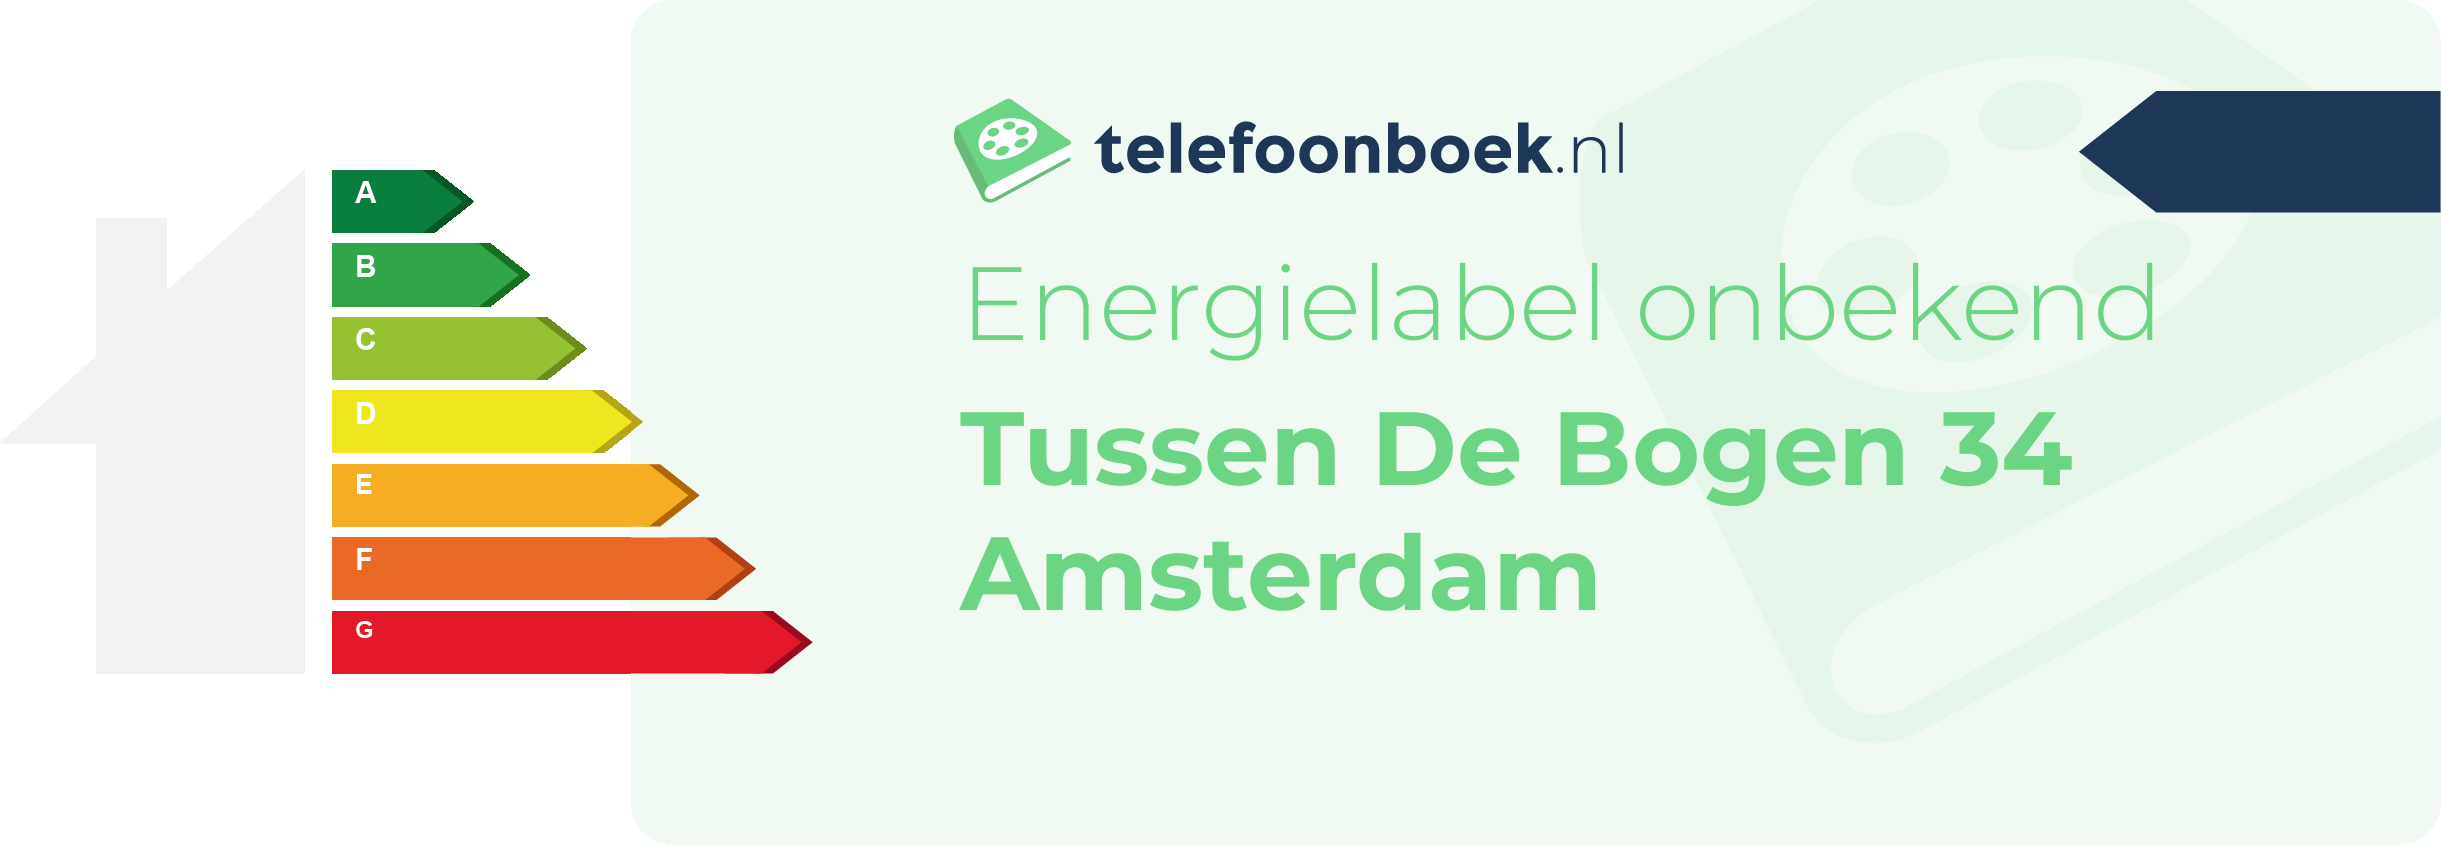 Energielabel Tussen De Bogen 34 Amsterdam